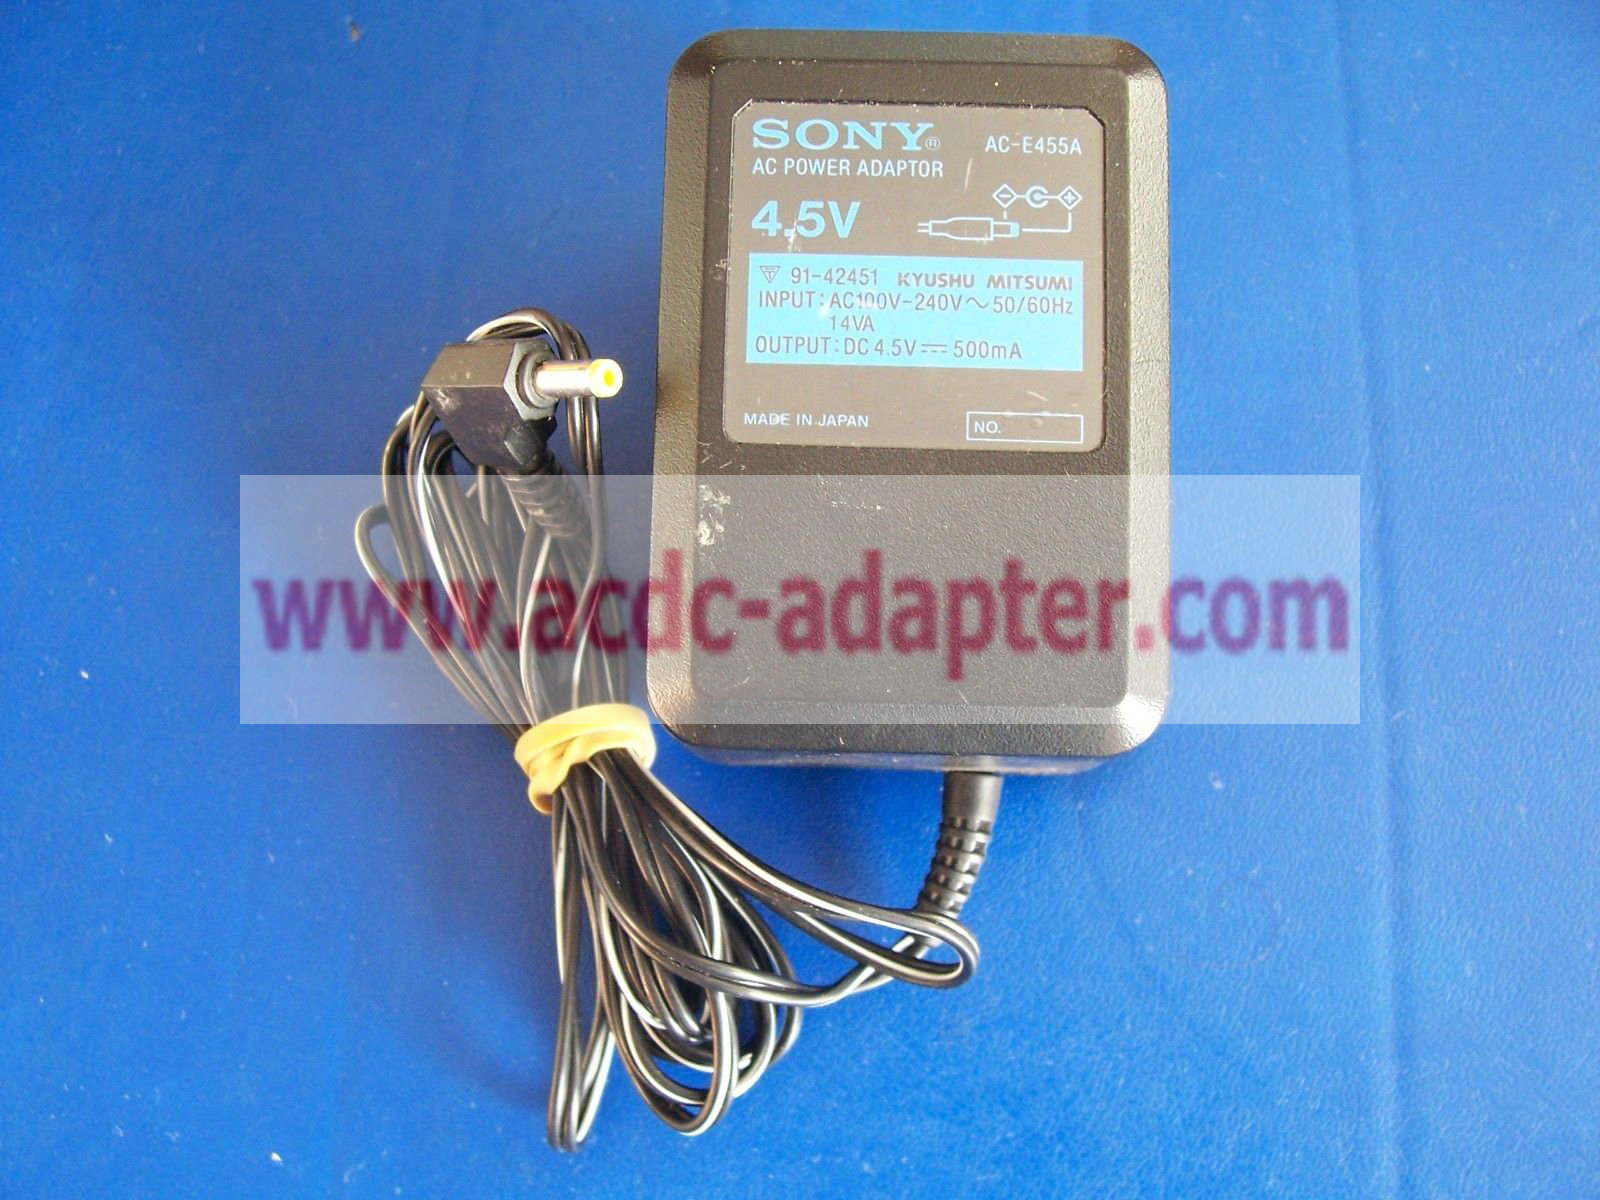 Genuine 4.5V 500mA Sony AC-E455A Power Adapter